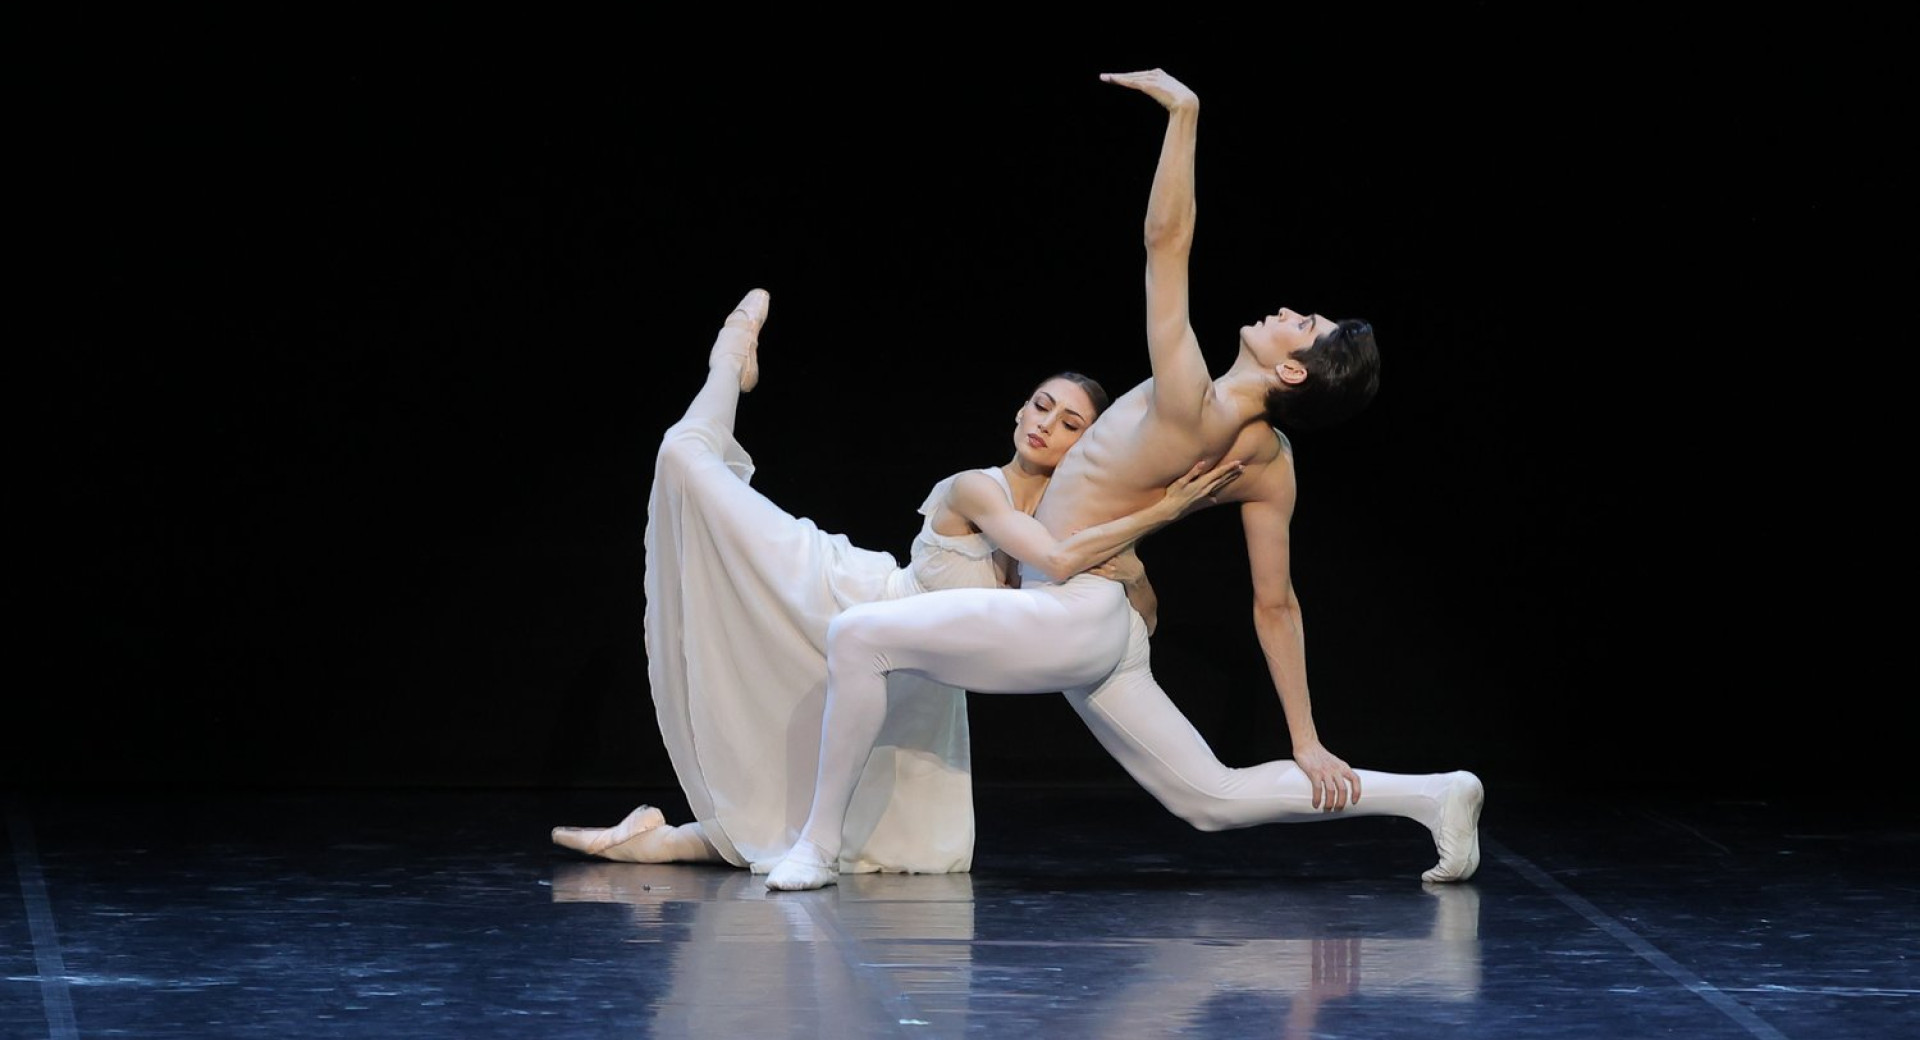 Baletnika, oblečena v belo, na odru – predstava Gala Balet Državnega opernega in baletnega gledališča v Astani, največje takšne institucije v Srednji Aziji